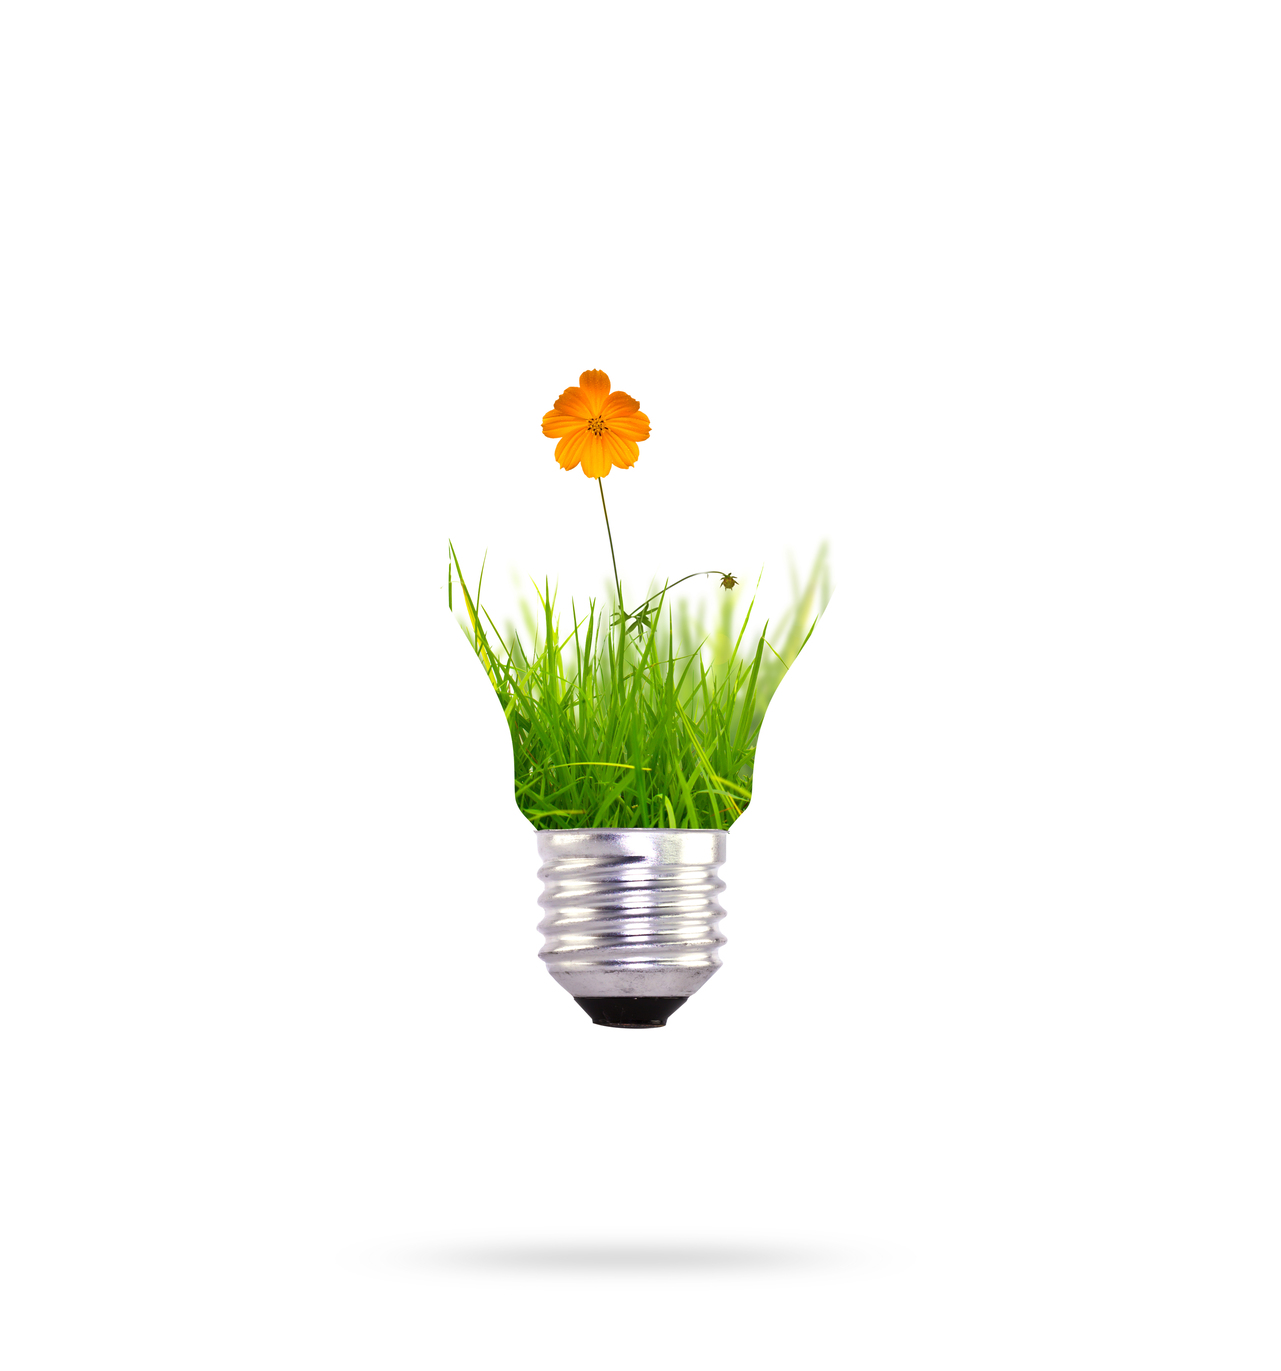 renewable energy with orange flower 1